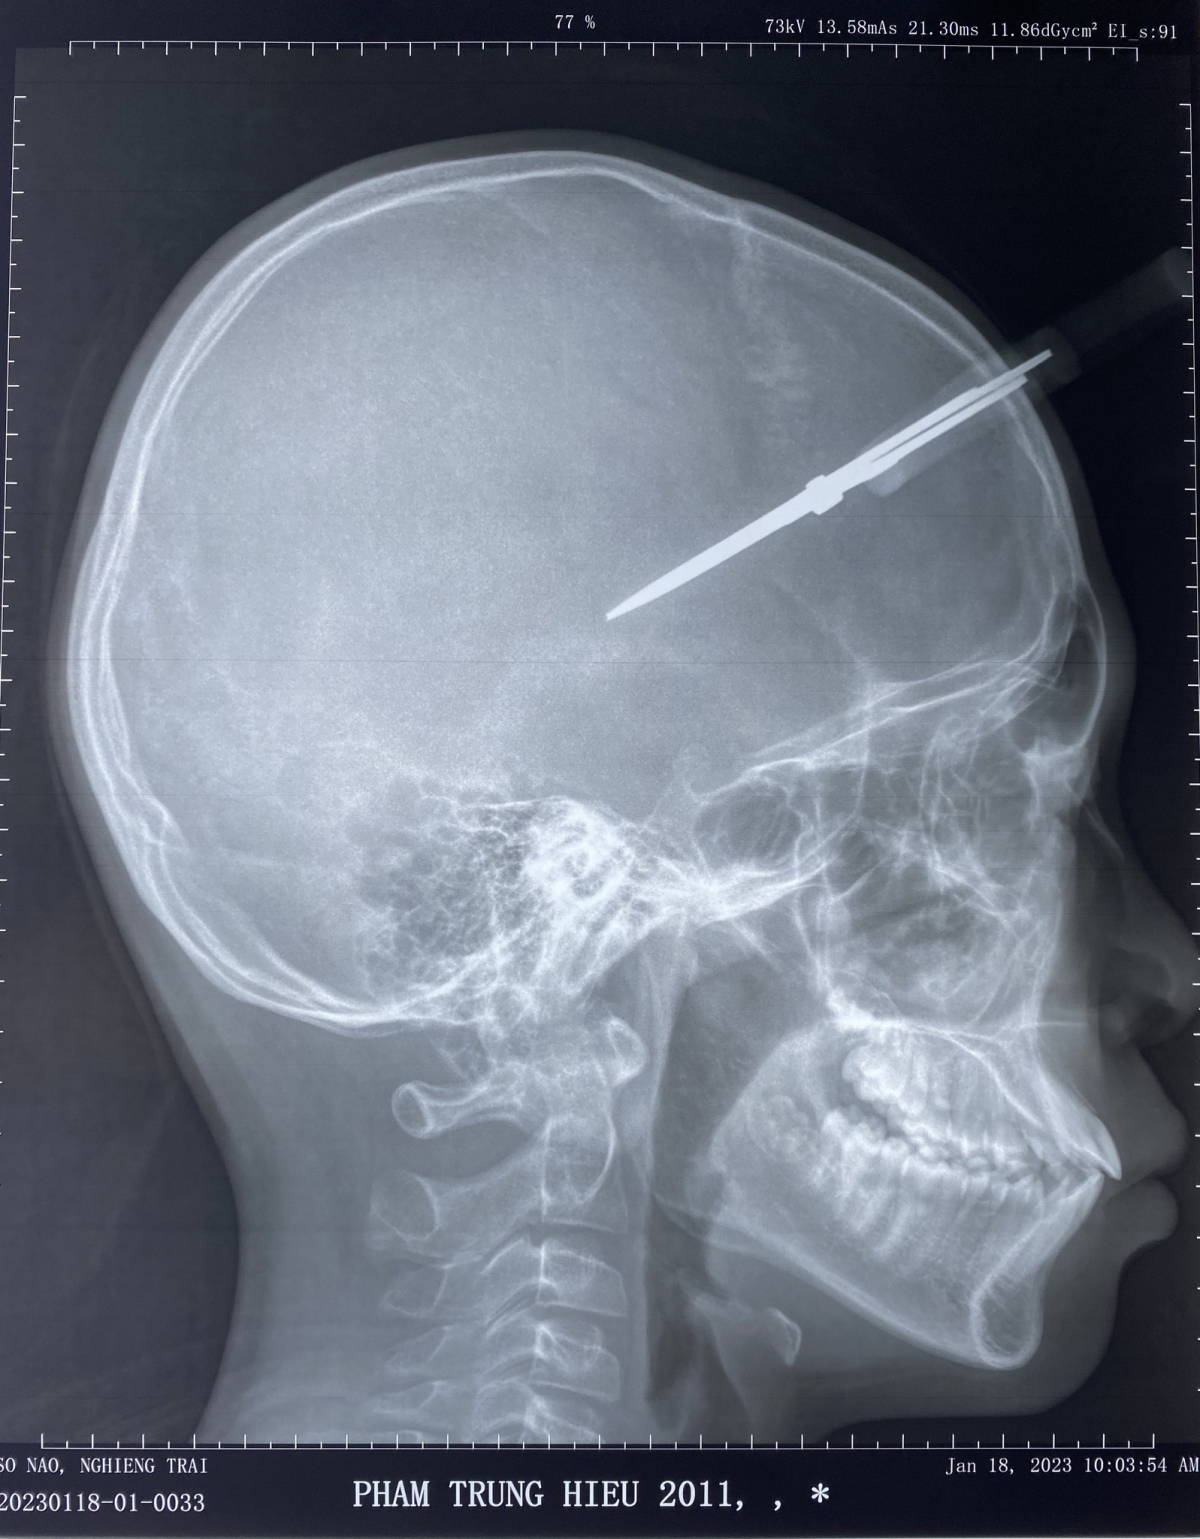 Trên phim chụp cây kéo đã xuyên qua xương sọ vào trong hộp sọ của bệnh nhi.